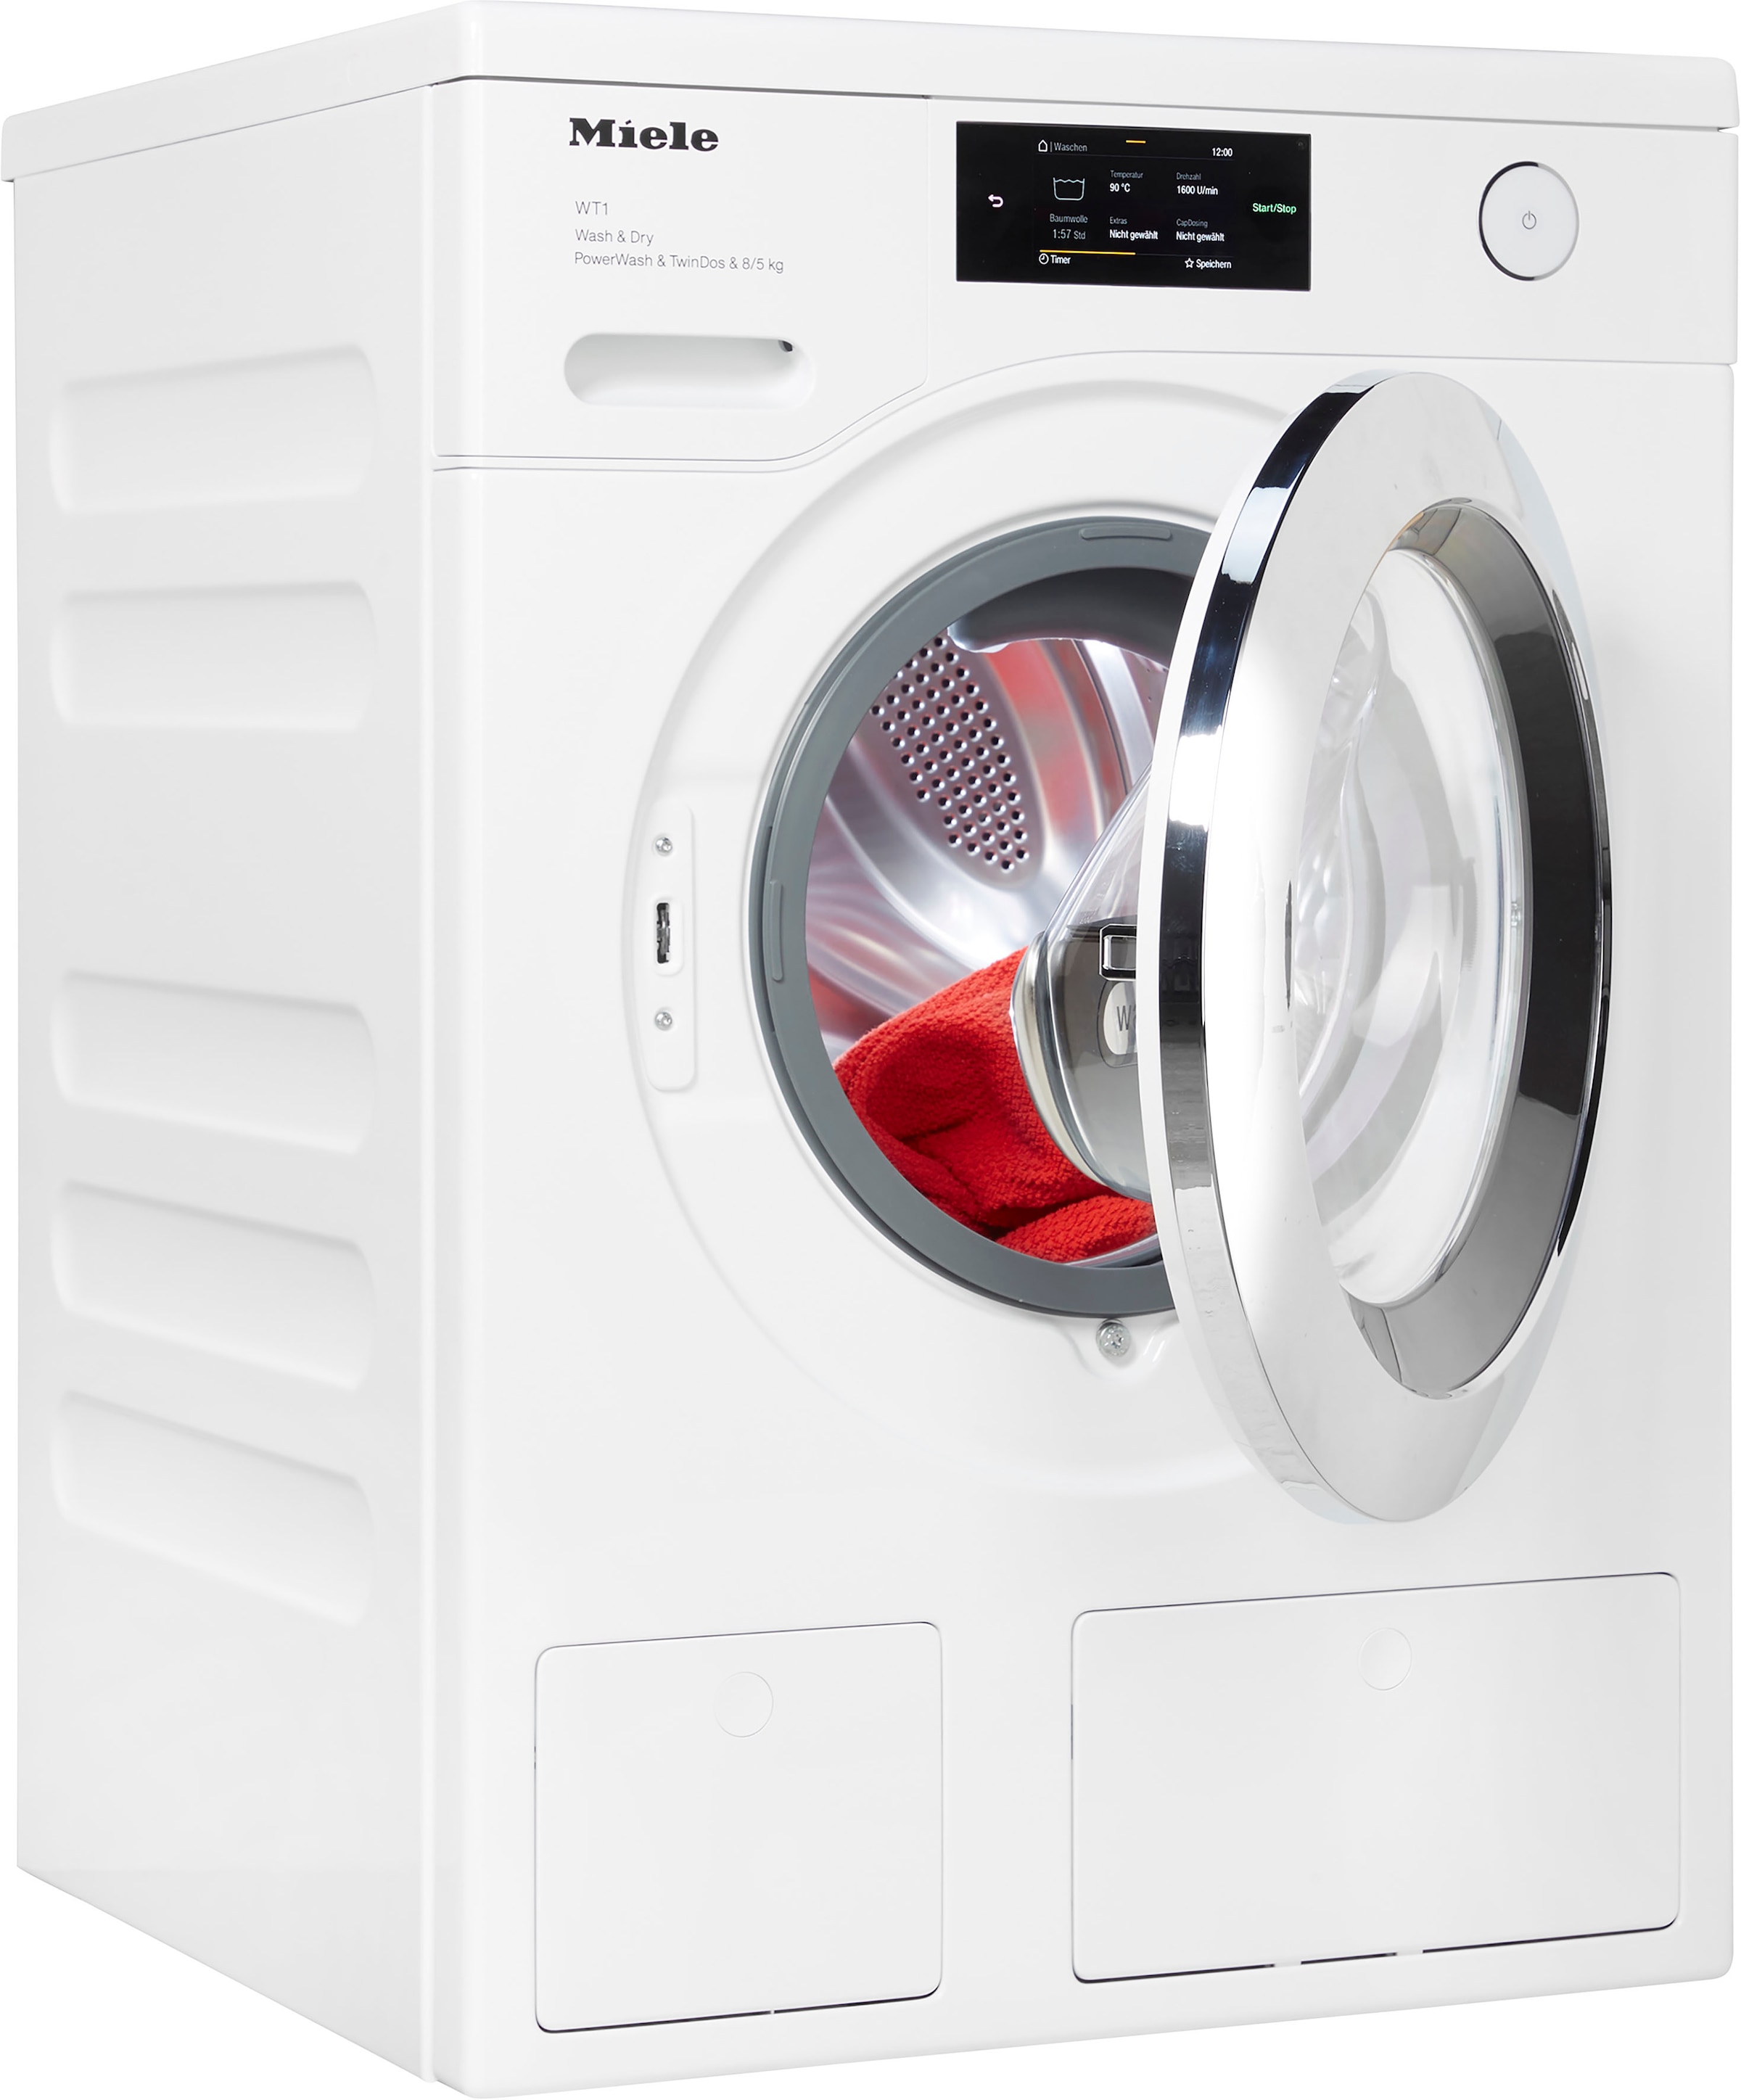 Miele Waschtrockner »WTR860WPM D LW PWash&TDos 8/5 Kg«, unterbaufähig, QuickPower für schnelles Waschen und Trocknen